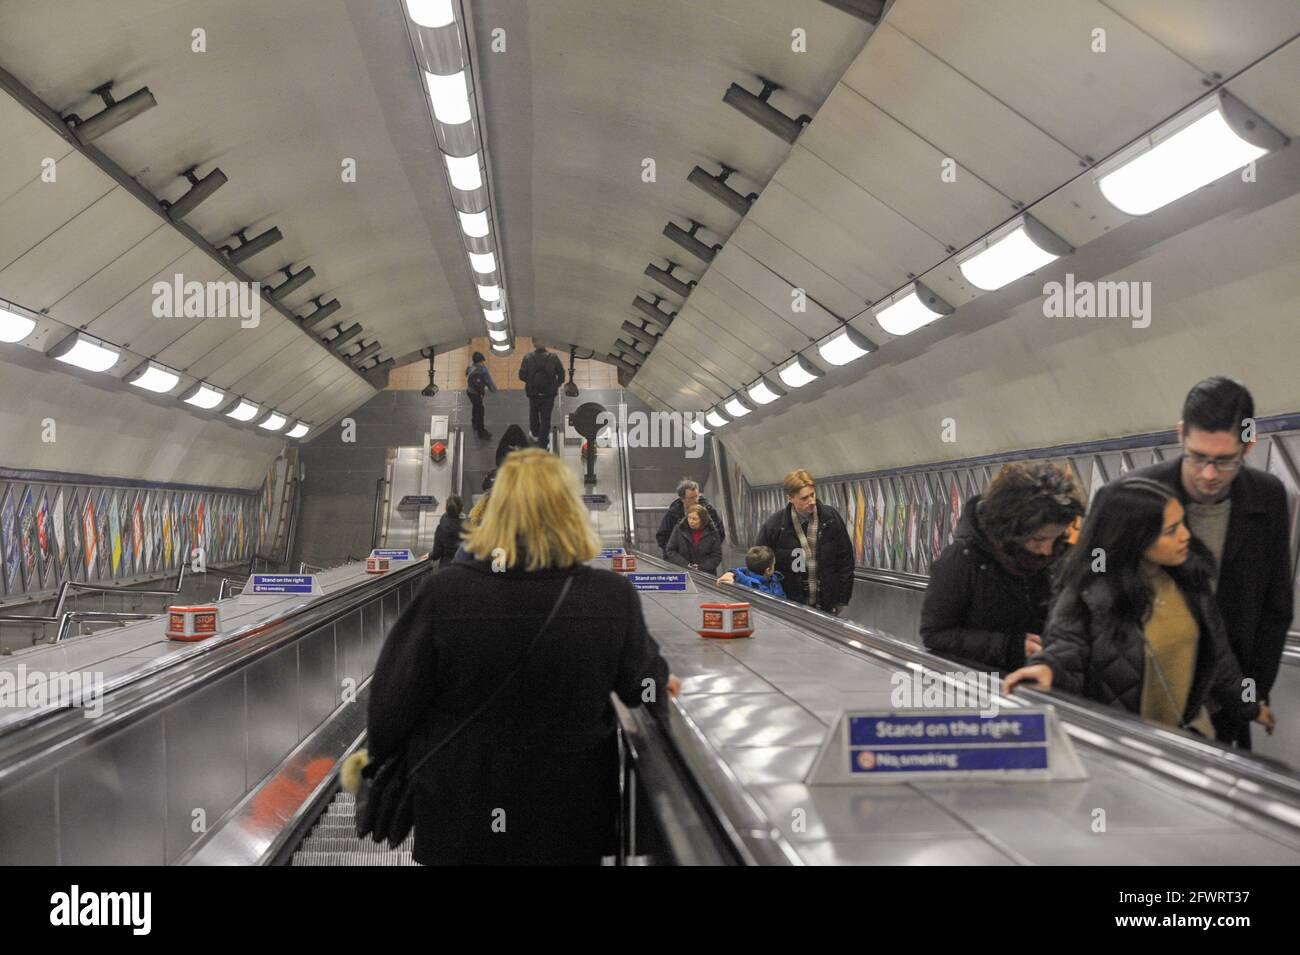 London, 29. Dezember 2016: Die Rolltreppen der U-Bahn, der Londoner U-Bahn, gehen manchmal mehrere Stockwerke und die entsprechenden Gleissysteme hinunter. Stockfoto